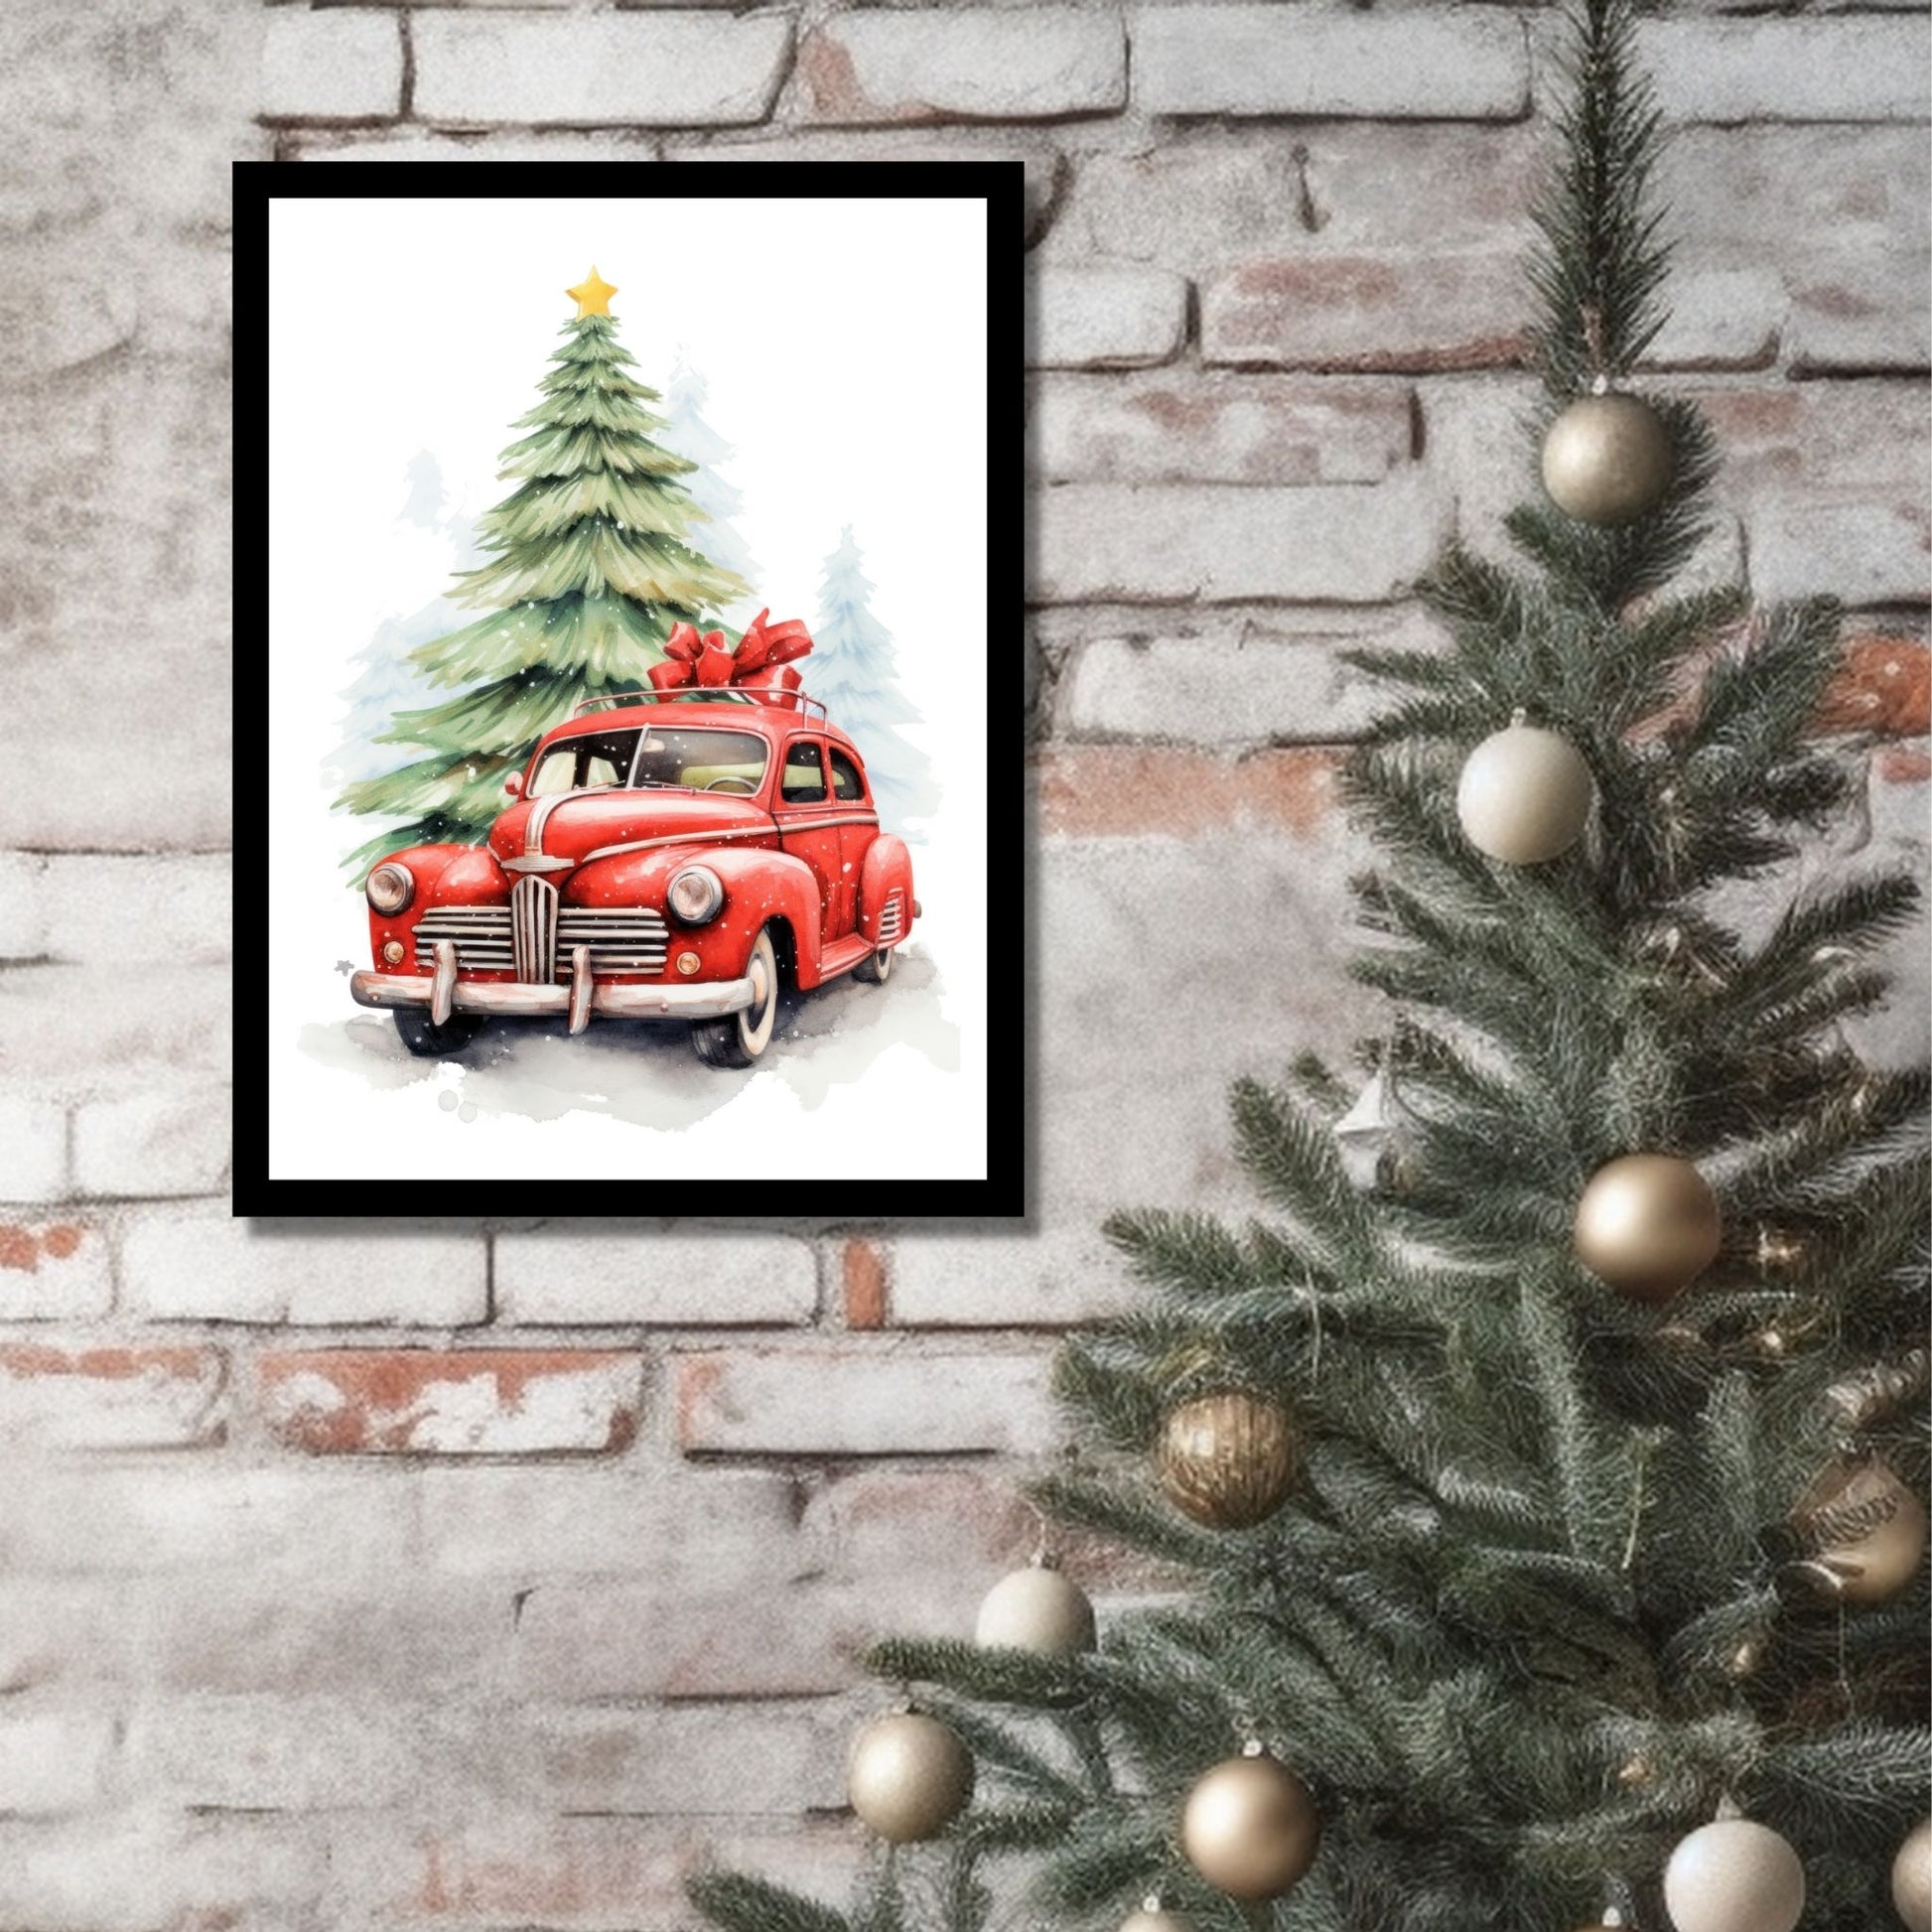 Plakat og lerret med grafisk julemotiv av gammel, rød veteranbil. Bilen kjører i en skog. På bildet henger motivet som plakaten i en sort ramme på en murvegg ved siden av et juletre.